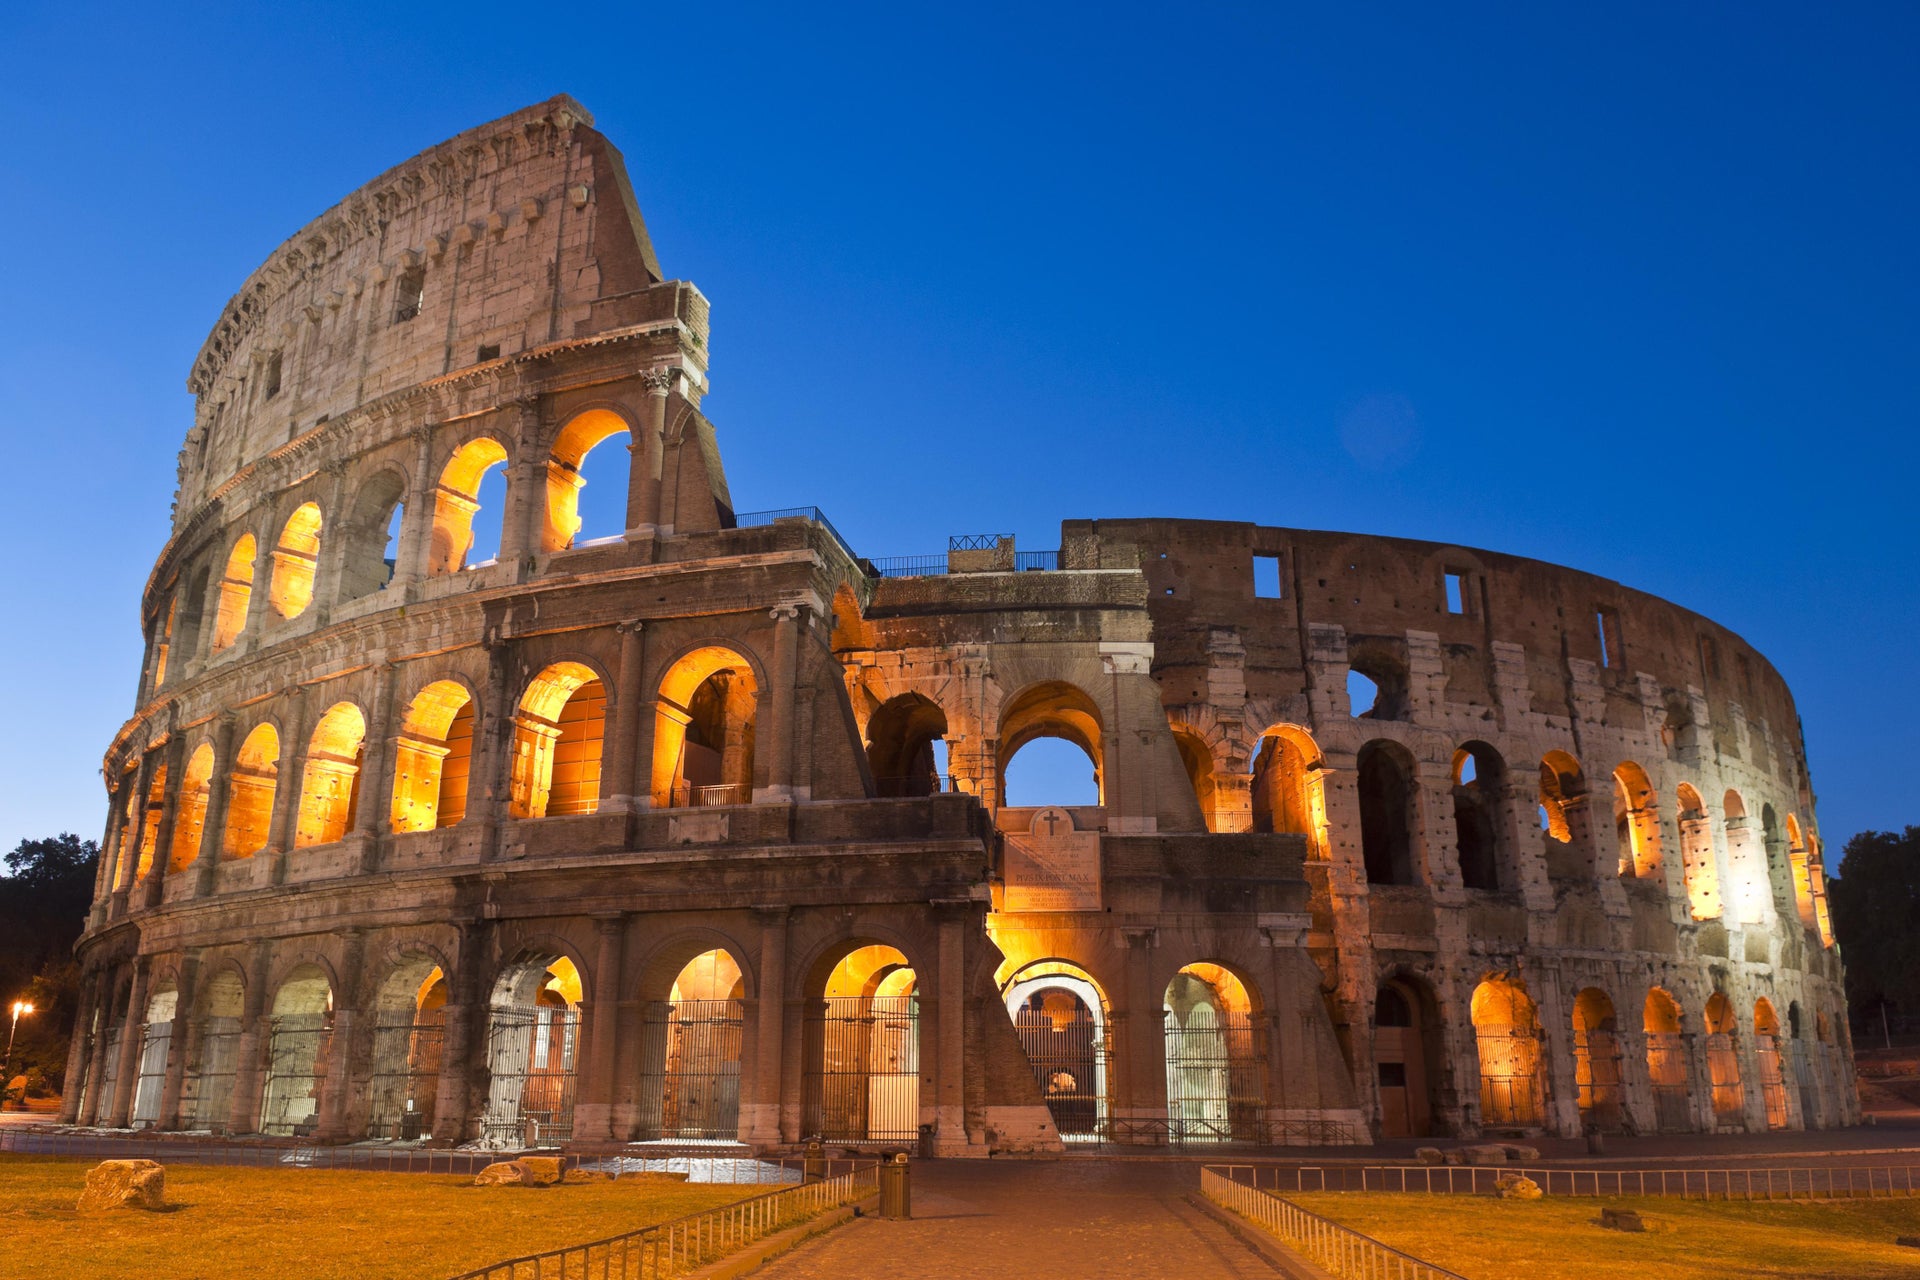 Tour nocturno por el Coliseo